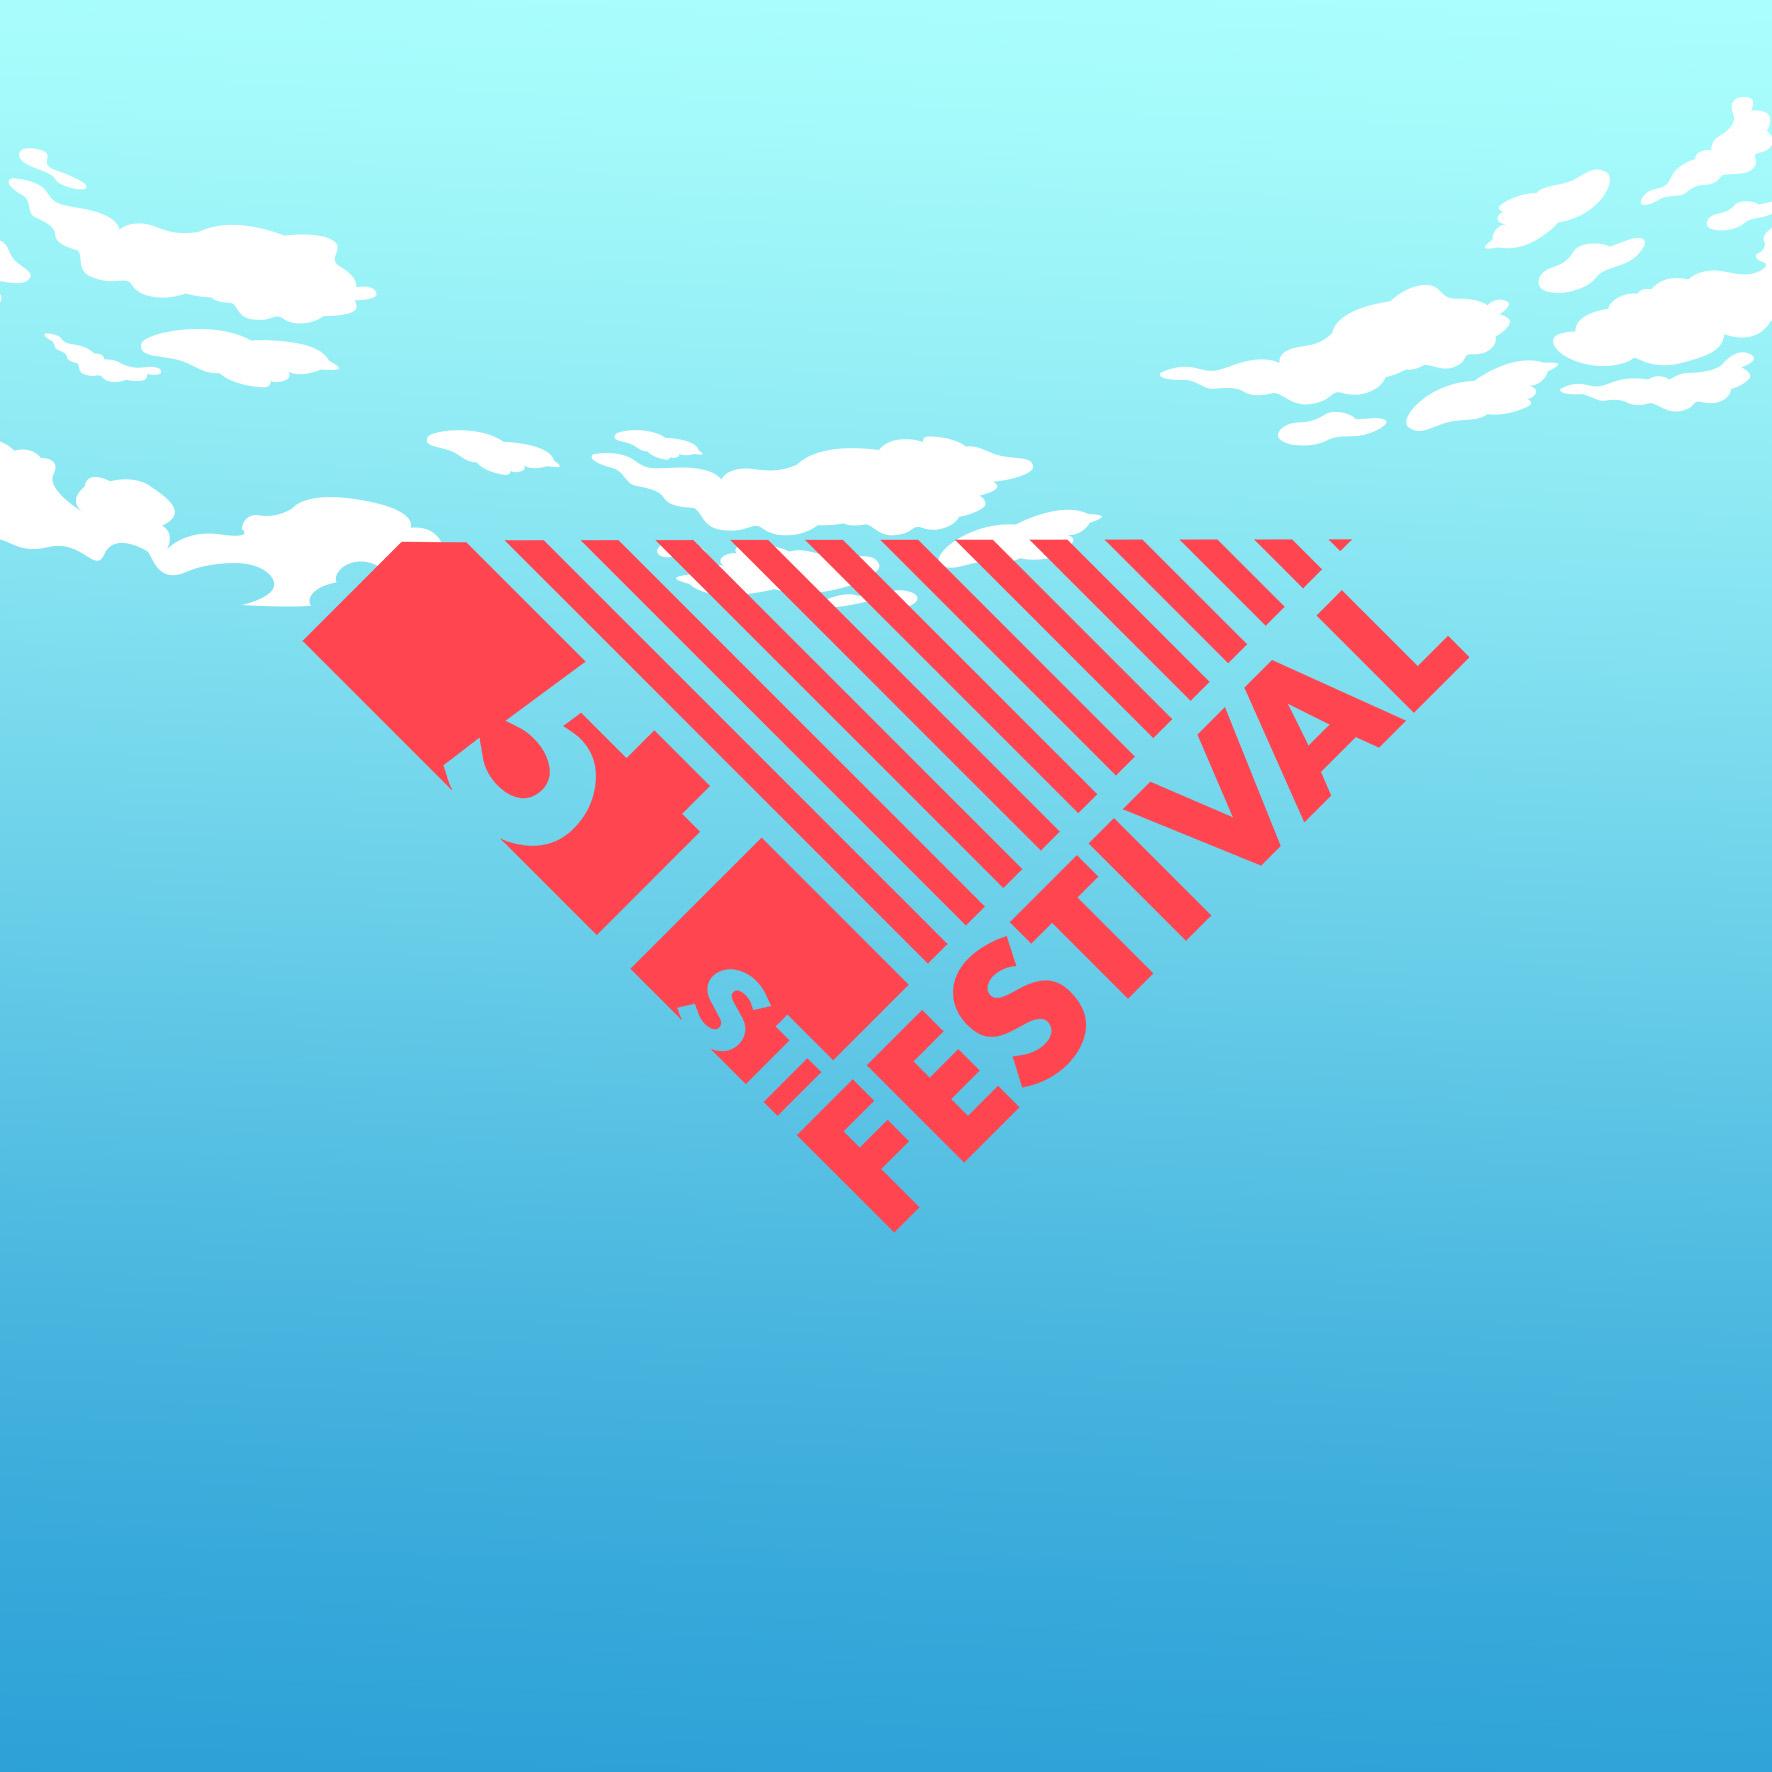 51st Festival